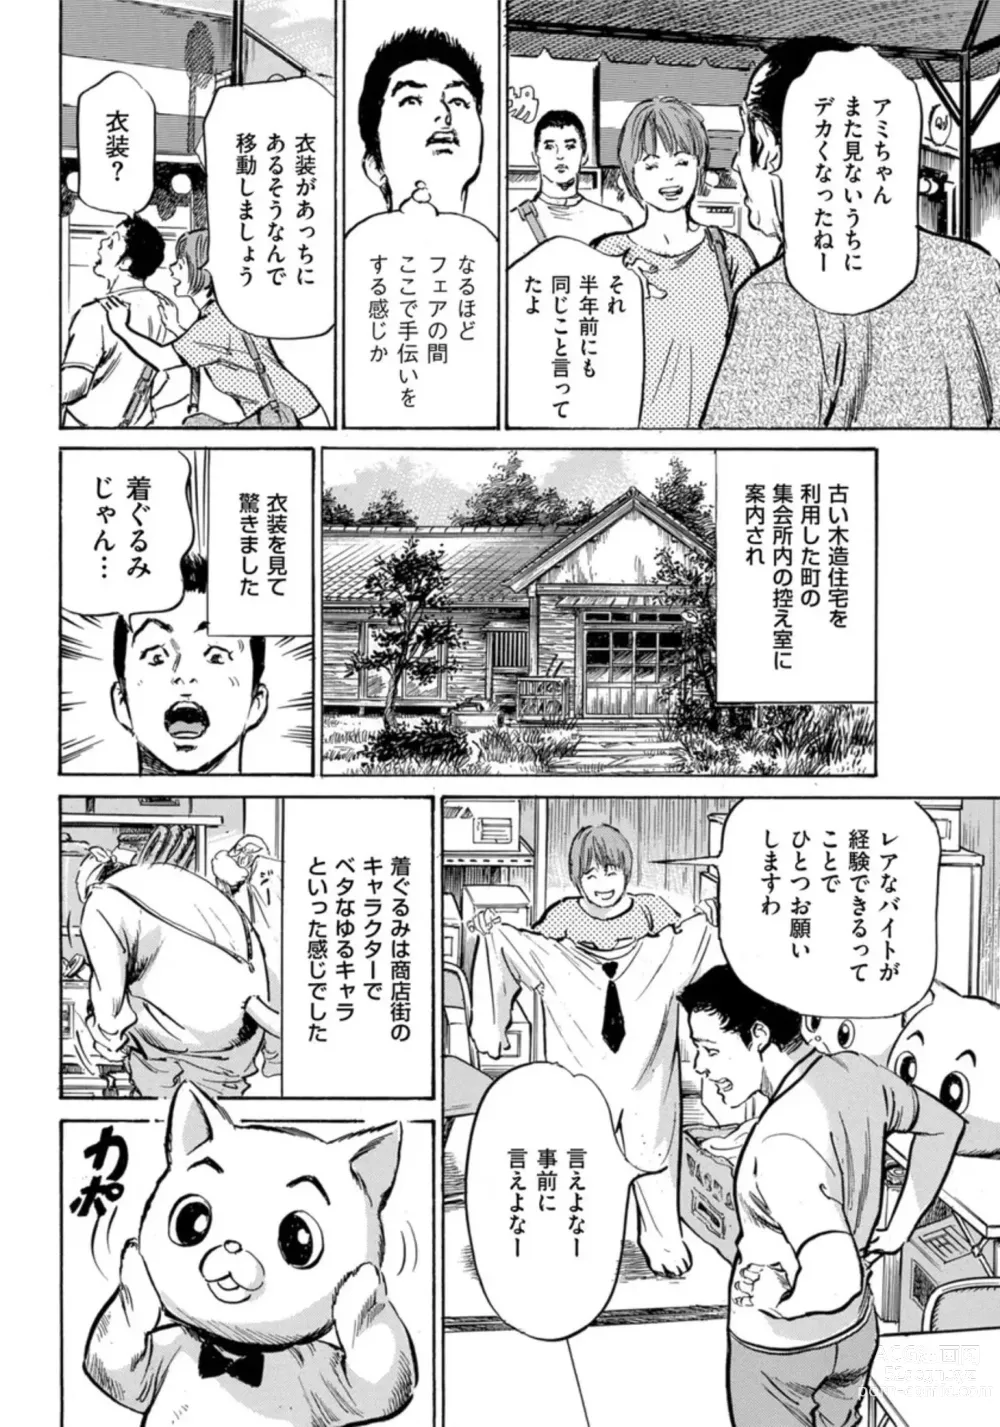 Page 5 of manga Zutto Himitsu ni Shiteita Ano Koto Zenbu Oshiemasu 14 episodes